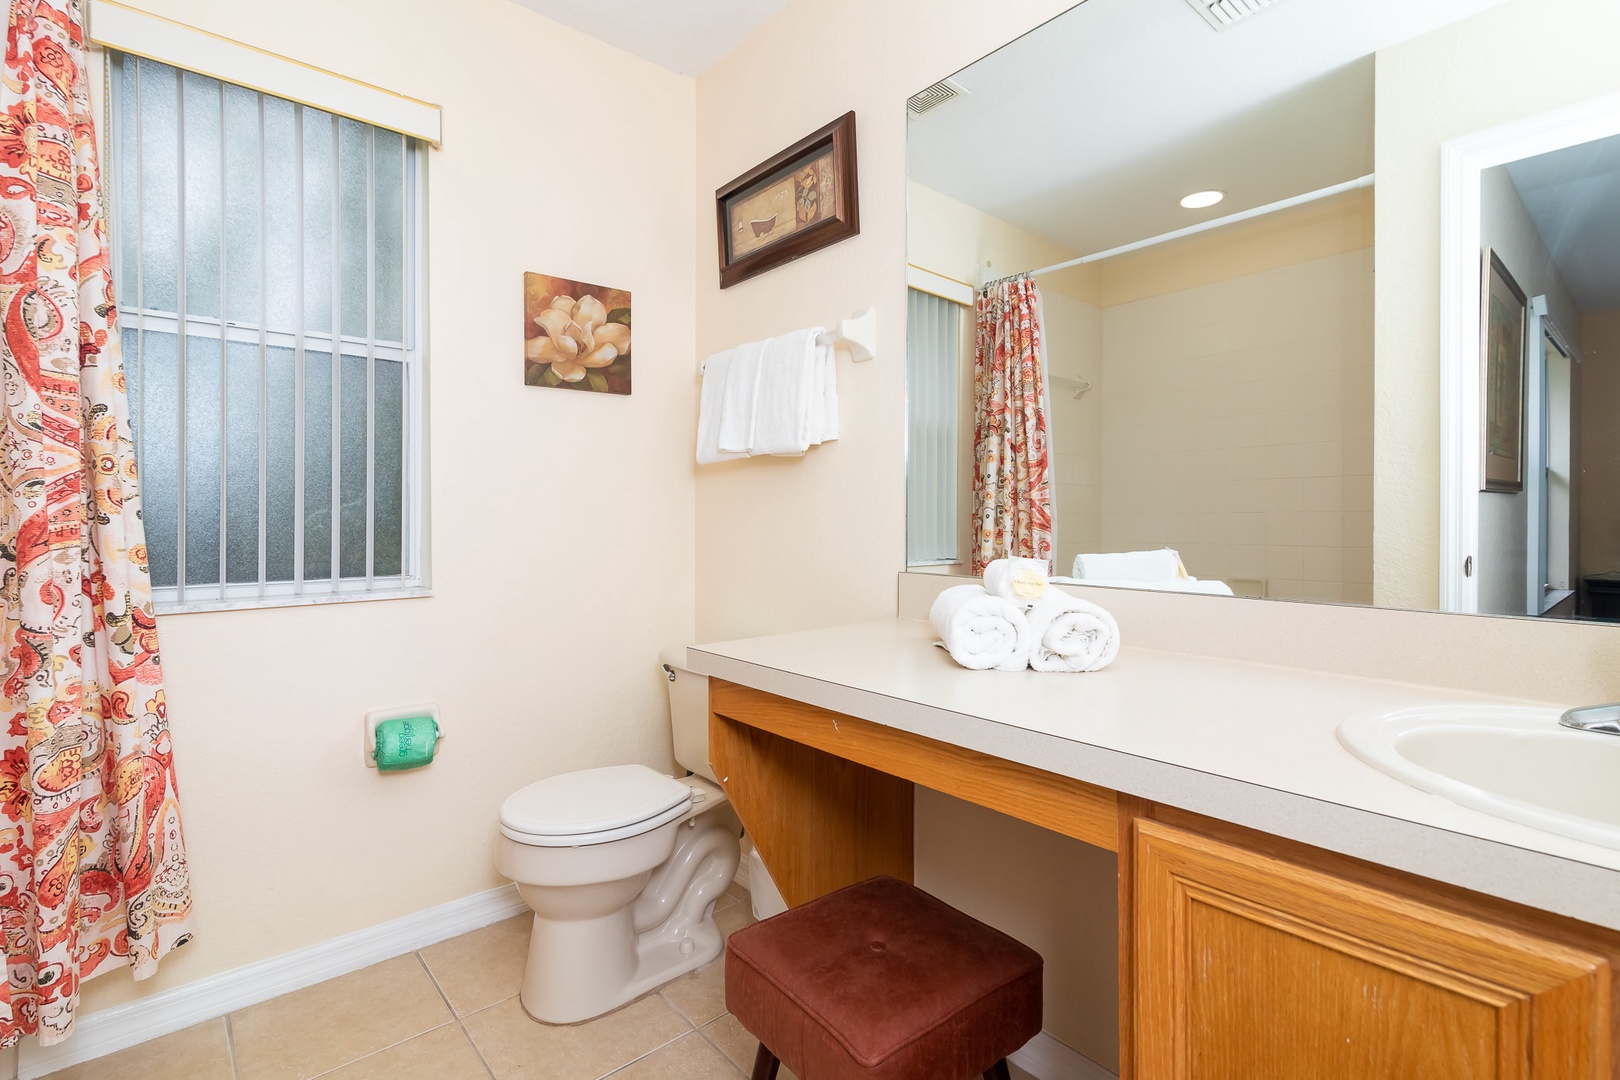 Second Floor Bathroom #3 Shower/Tub Combo EN-Suite to Bedroom #3